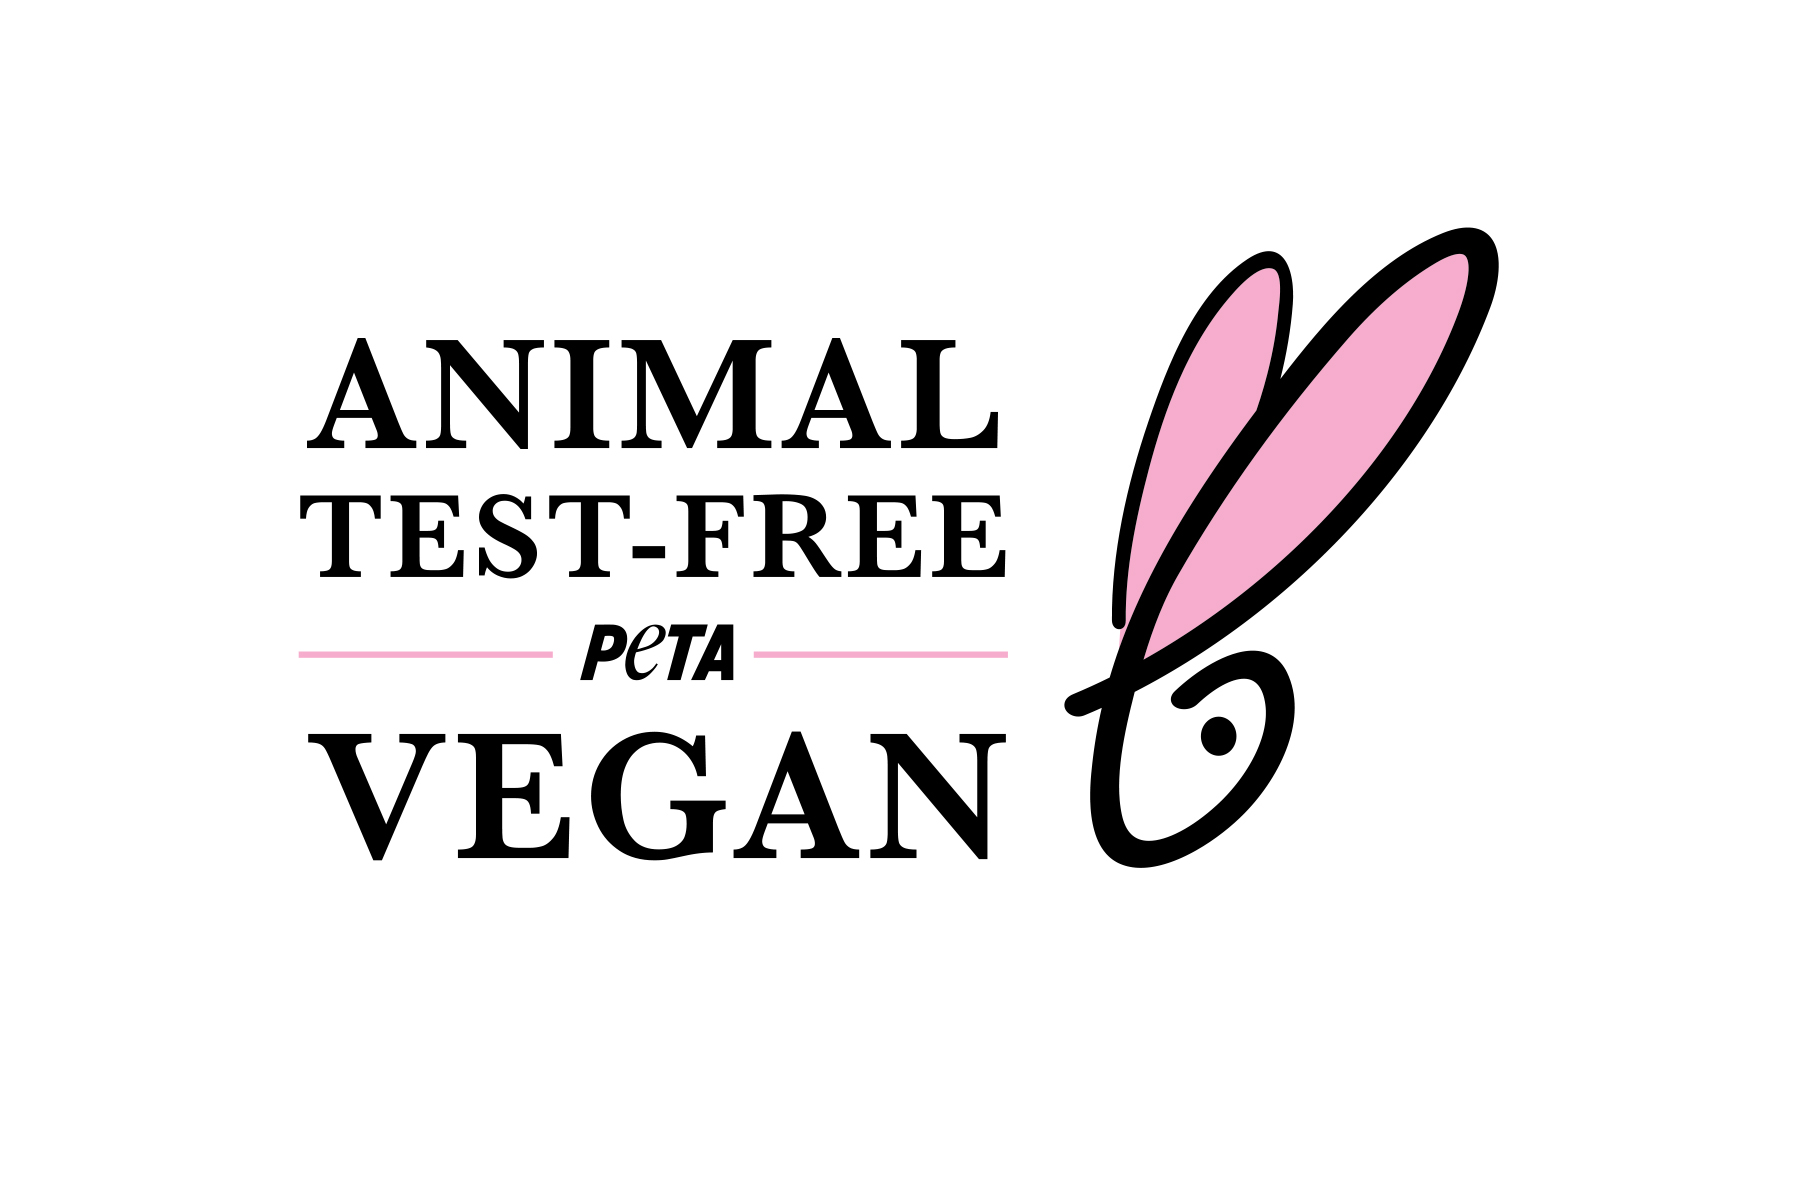 Animal Test-Free and Vegan